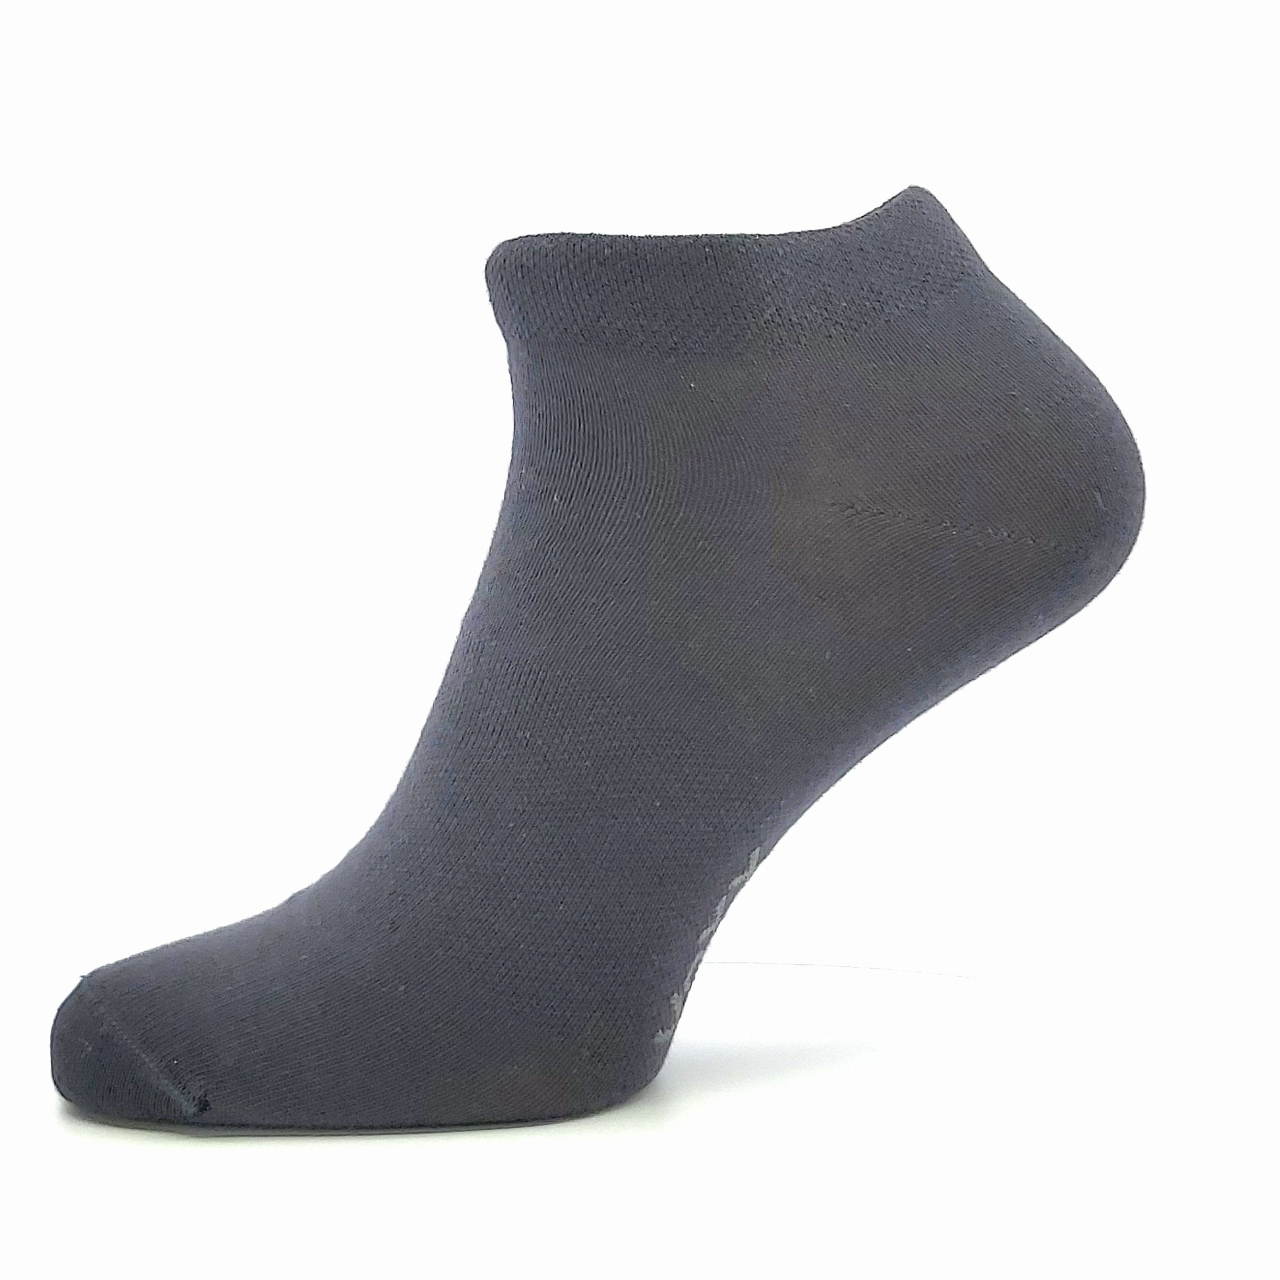 Ponožky unisex Voxx Rex 00 - tmavě šedé, 35-38